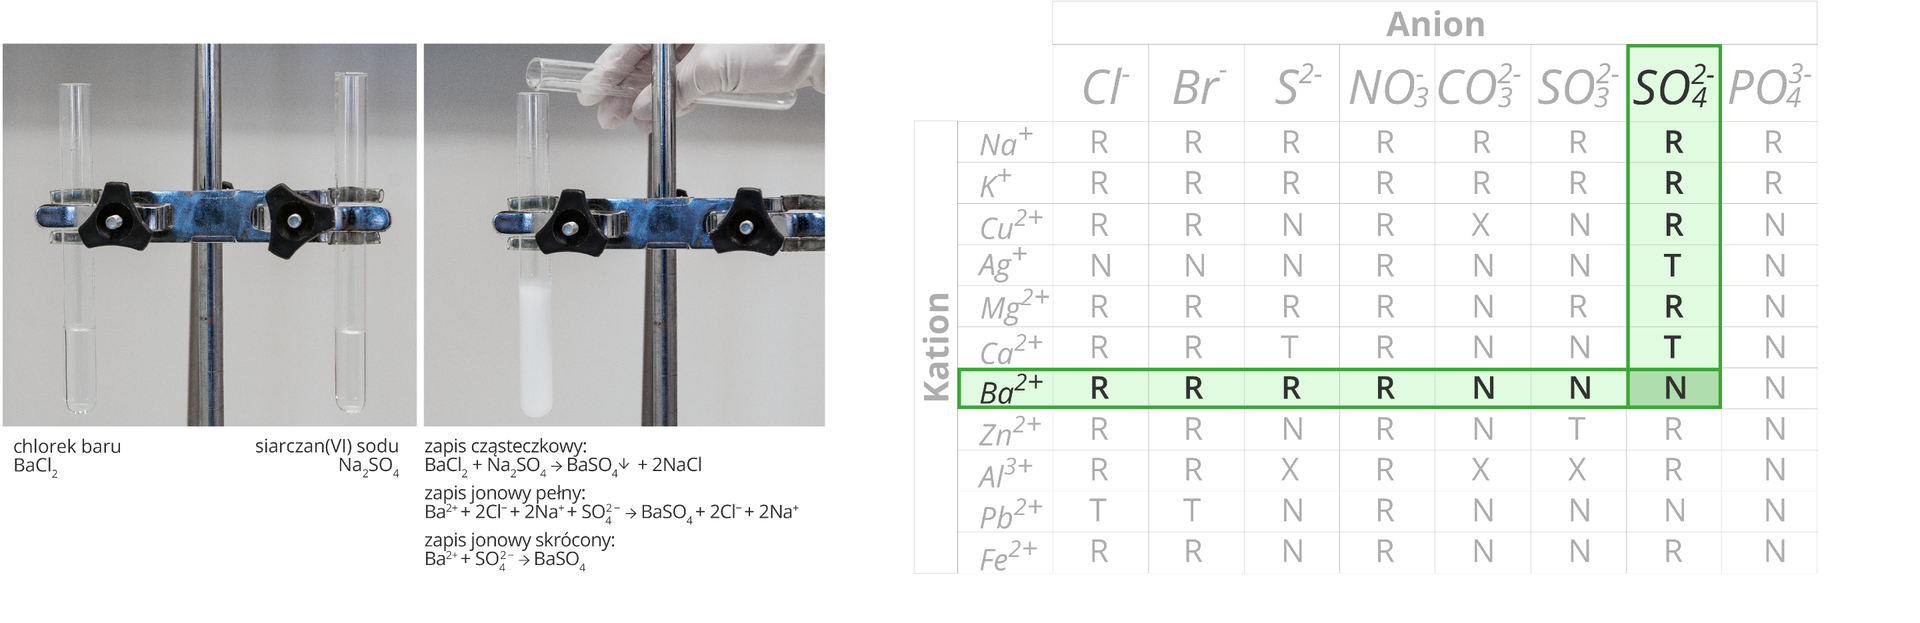 Ilustracja składa się z dwóch zdjęć oraz tabeli umieszczonych w jednym szeregu obok siebie. Zdjęcia dodatkowo zaopatrzone są w podpisy. Pierwsze zdjęcie z lewej strony przedstawia dwie probówki unieruchomione w podwójnej łapie statywu. Podpis pod lewą probówką informuje, że znajdującą się w niej bezbarwną cieczą jest roztwór chlorku baru o wzorze BaCl2. Podpis pod prawą probówką informuje, że bezbarwna ciecz wewnątrz naczynia to roztwór siarczanu sześć sodu o wzorze Na2SO4. Drugie zdjęcie przedstawia moment przelewania zawartości prawej probówki do lewej. Zachodzi reakcja w wyniku której wytrąca się biały osad. Poniżej zapis przebiegu tej reakcji w postaci cząsteczkowej, jonowej pełnej i jonowej skróconej. Wynika z nich, że w wyniku przereagowania chlorku baru z siarczanem sześć sodu powstają siarczan sześć baru, który wytrąca się w postaci osadu oraz dwa atomy chlorku sodu. Cechą szczególną tej akcji jest to, że biorą w niej udział tak naprawdę tylko wolne jony Ba dwa plus oraz SO4 dwa minus, które łącząc się ze sobą tworzą związek nierozpuszczalny w wodzie. Trzecia część ilustracji, zajmująca całą jej prawą stronę to znana z poprzednich lekcji tabela rozpuszczalności z zaznaczonym na różowo wierszem dla kationu baru oraz kolumną dla anionu grupy siarczanowej sześć. Pole znajdujące się na skrzyżowaniu tego wiersza i kolumny informuje nas, że BaSO4 jest związkiem nierozpuszczalnym w wodzie.